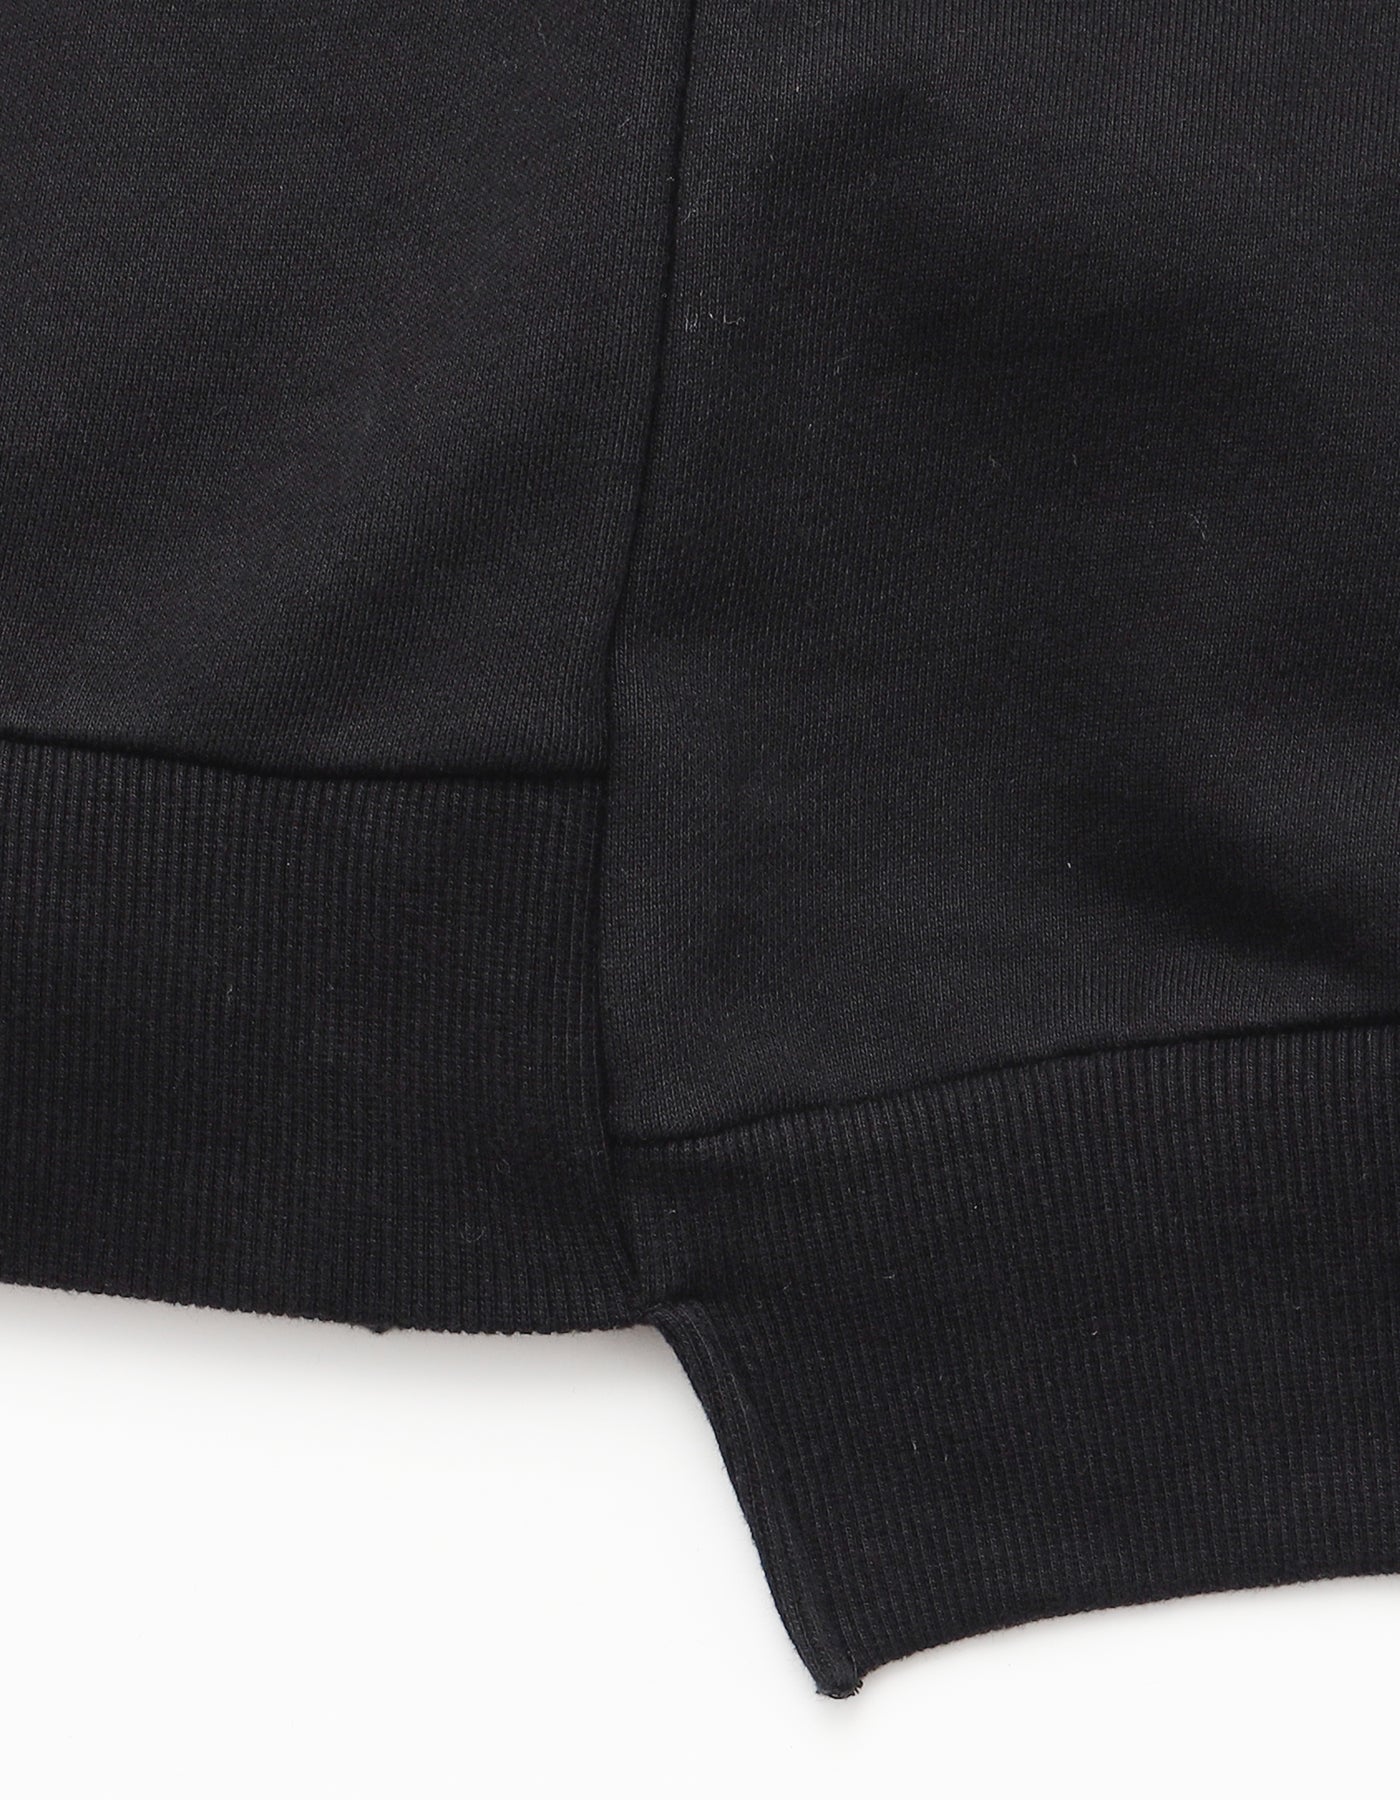 Kewi hoodie / BLACK